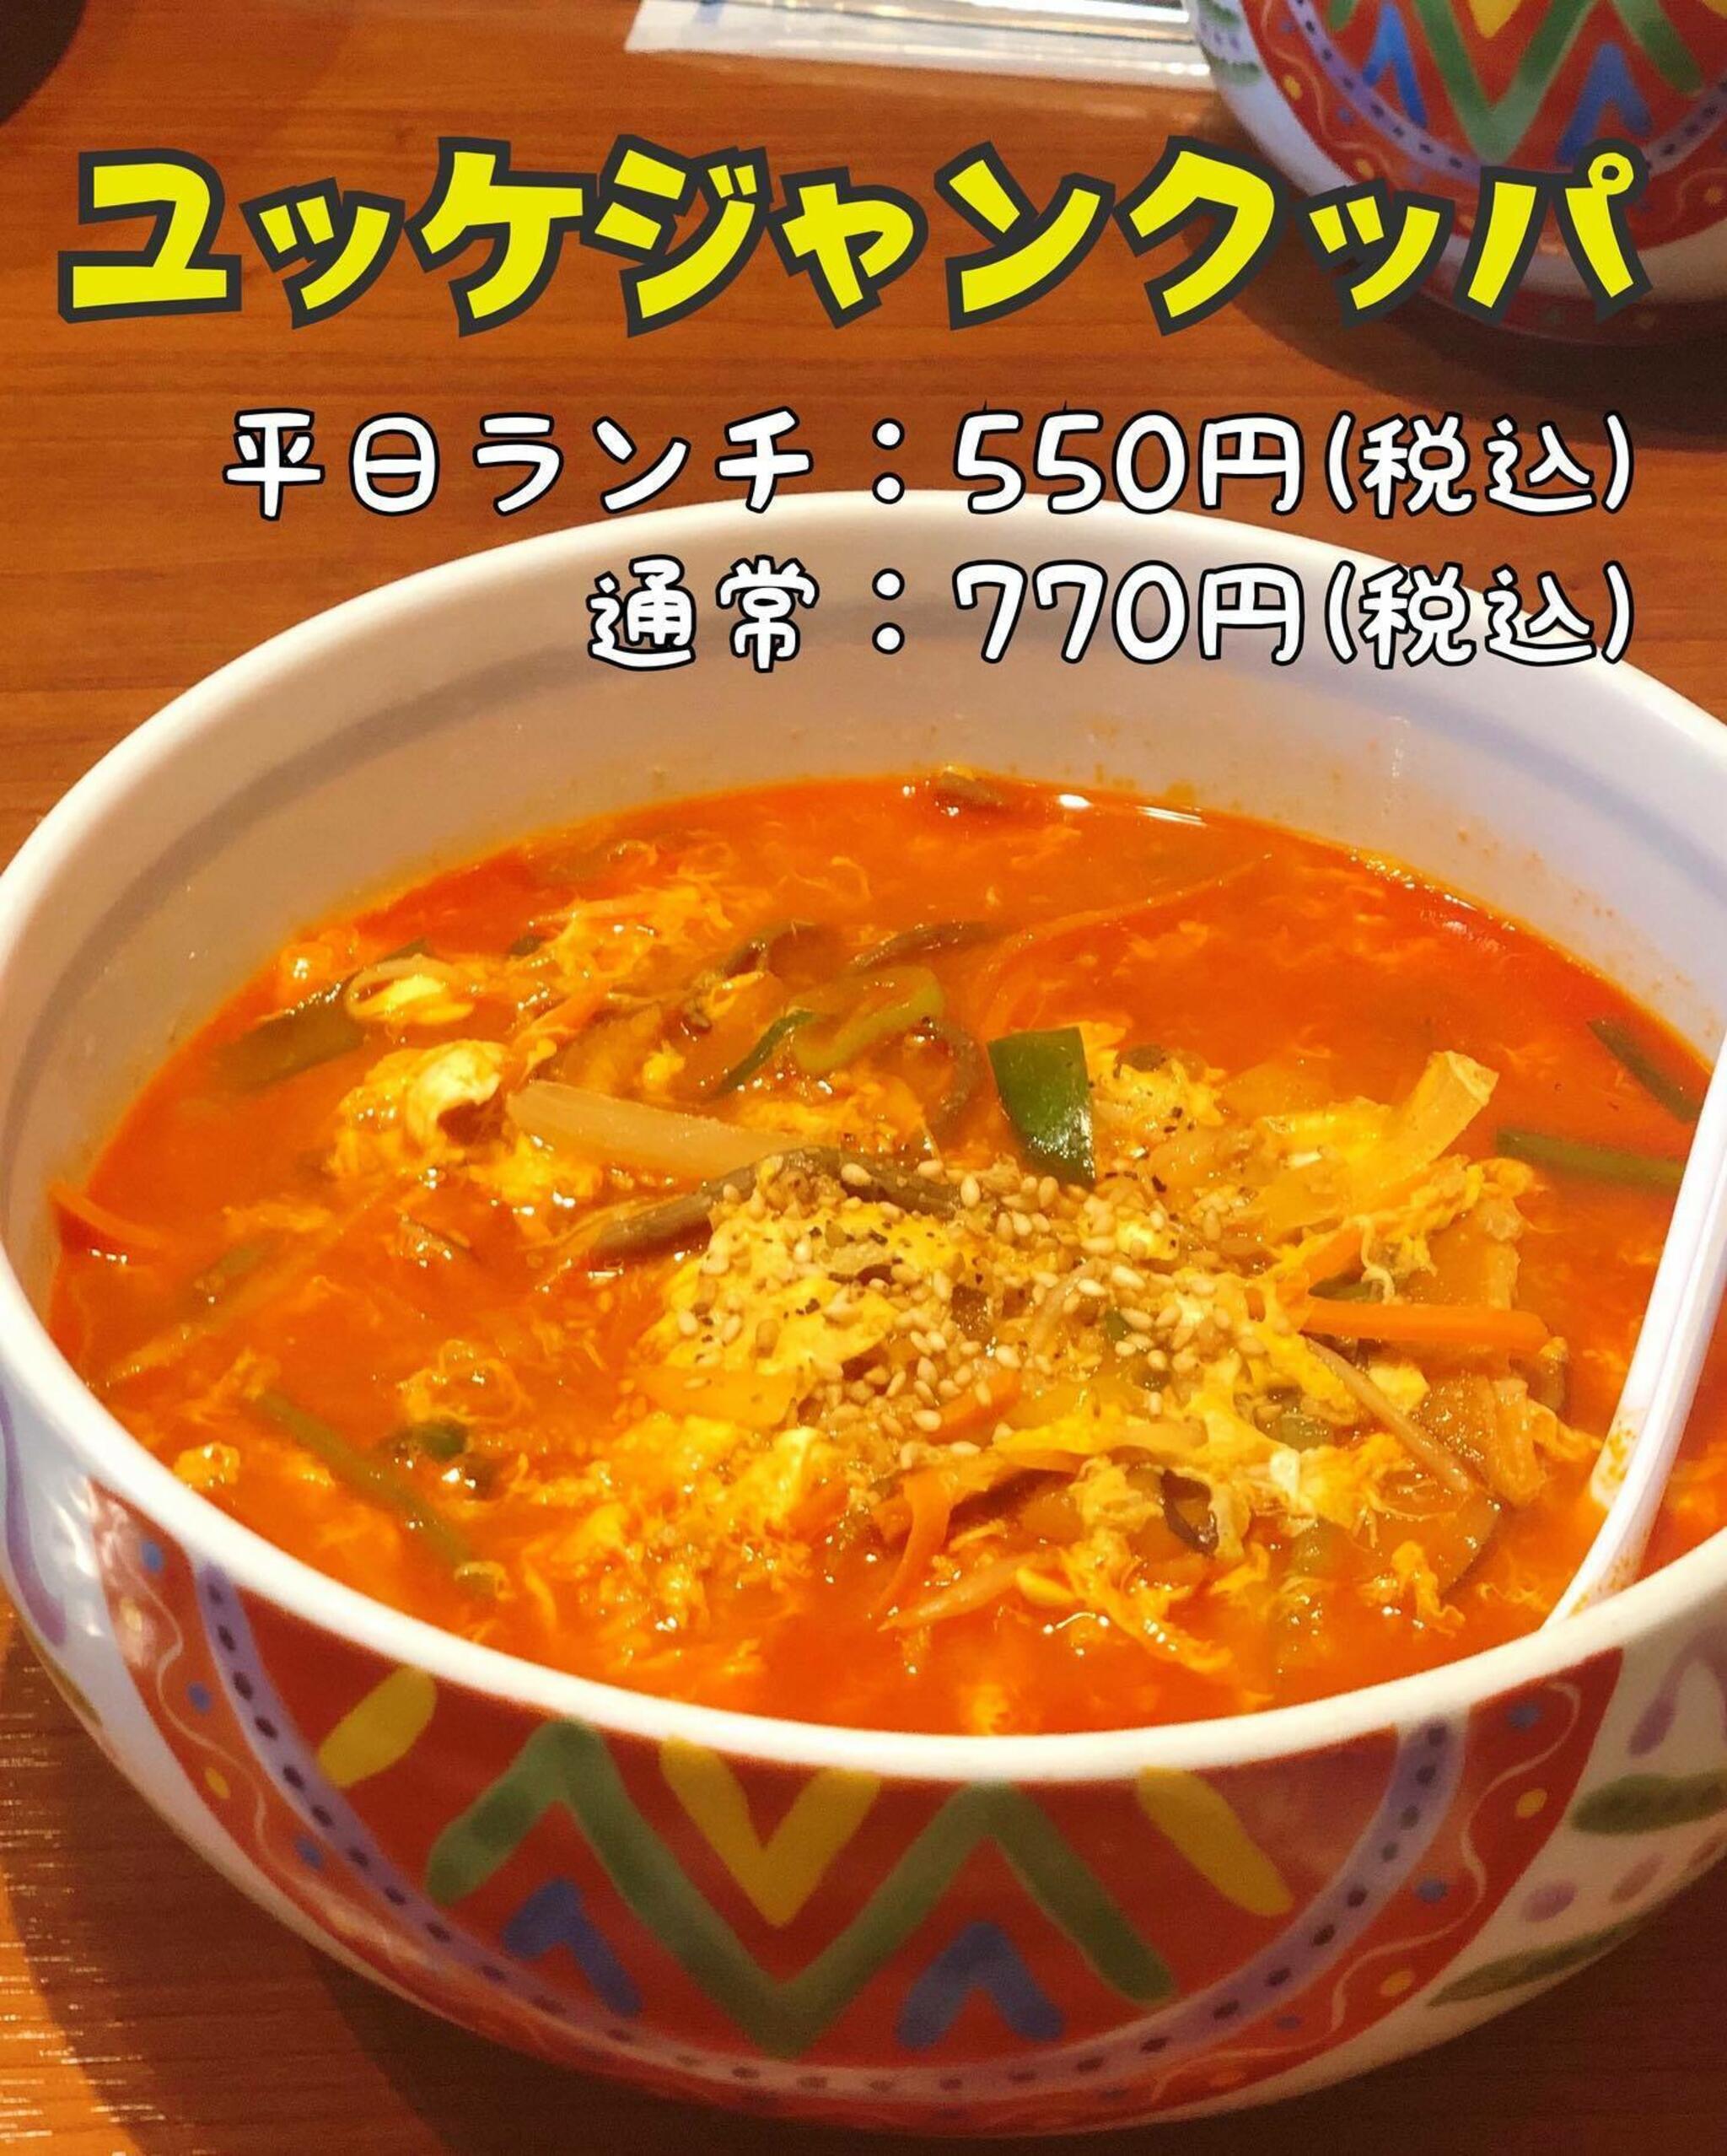 焼肉冷麺やまなか家 上田バイパス店からのお知らせ(平日ランチがとってもお得です♪【ユッケジャンクッパ】)に関する写真